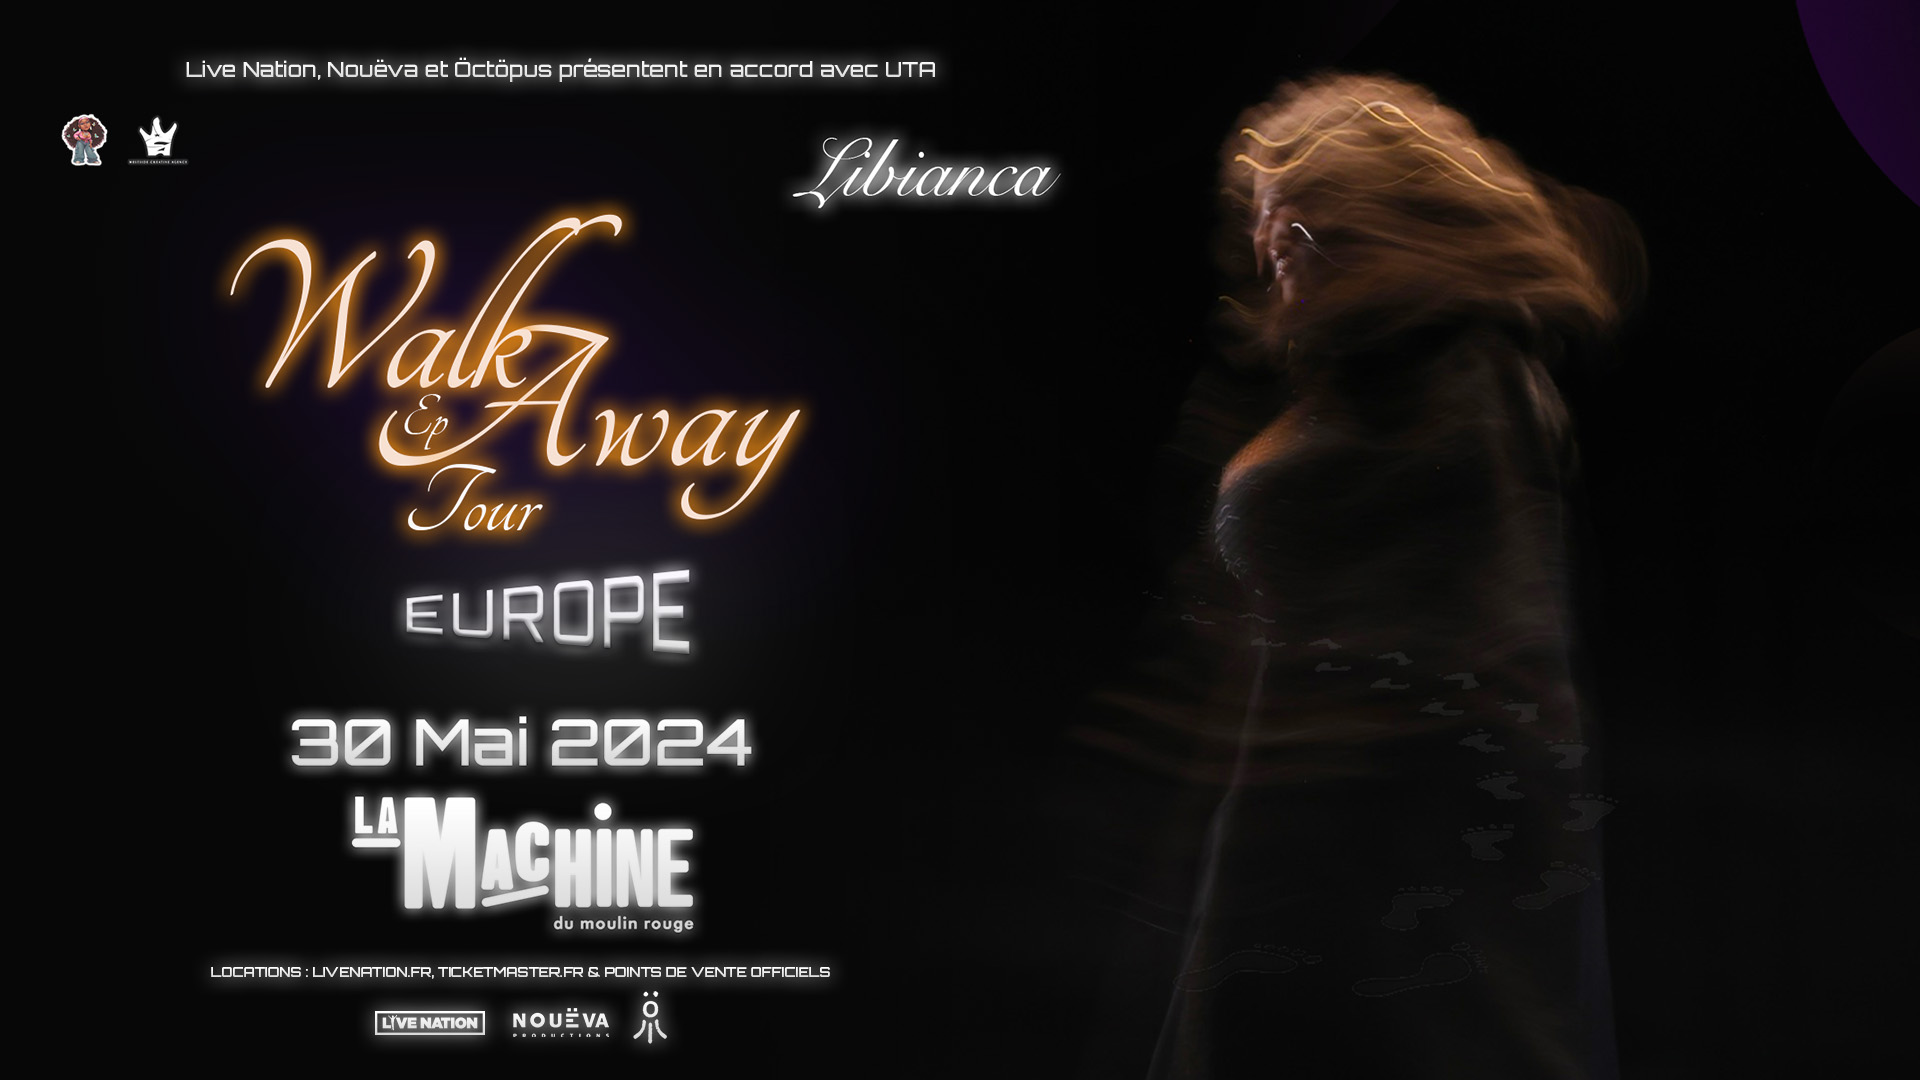 Libianca at La Machine du Moulin Rouge Tickets